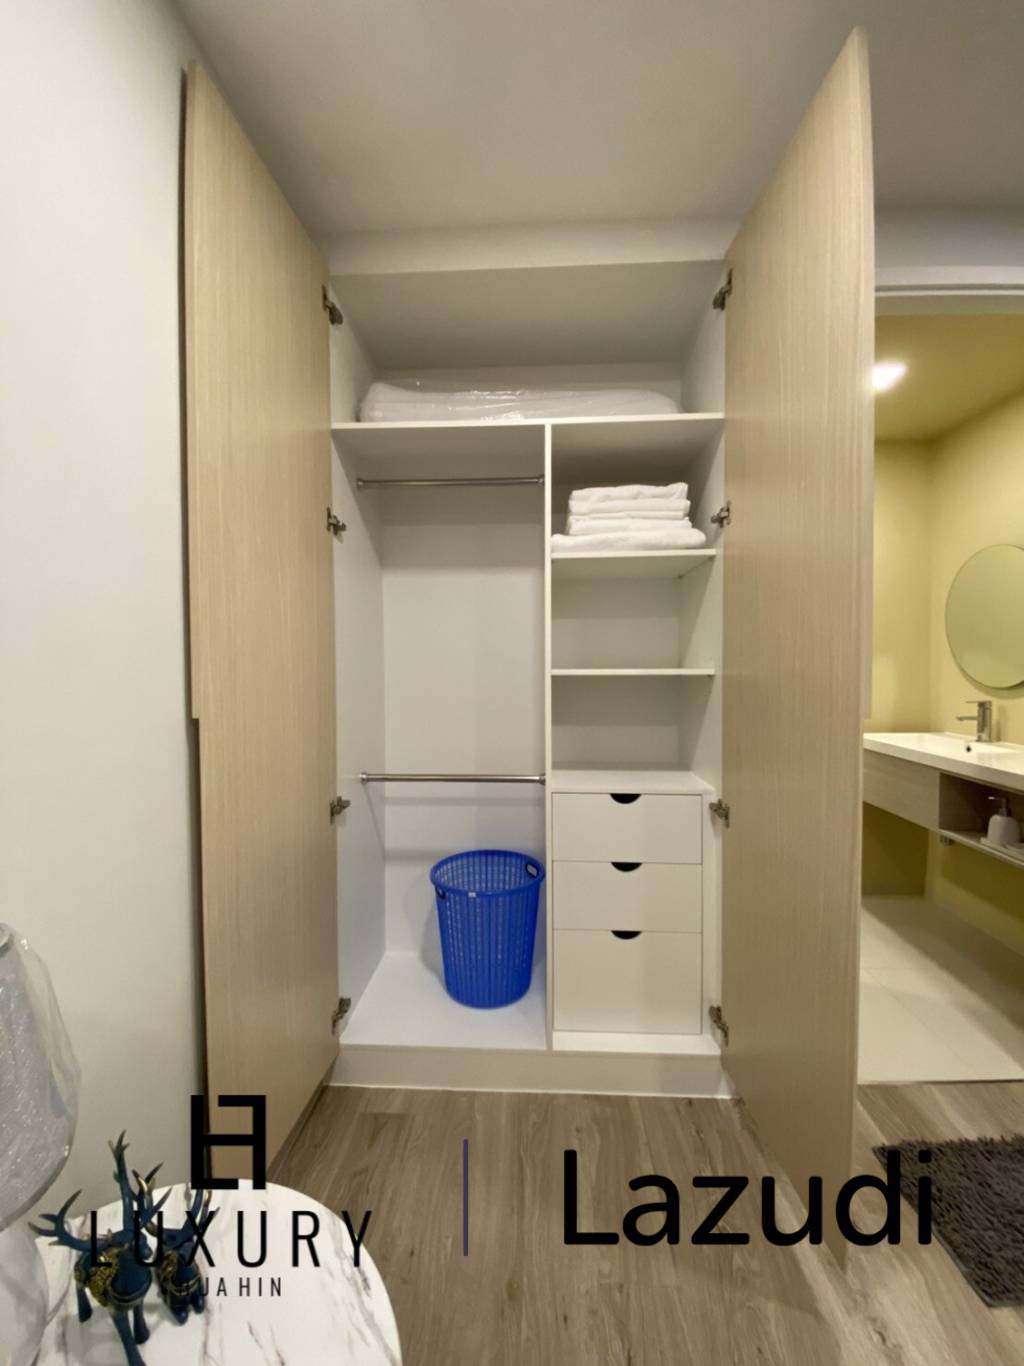 31 平方米 1 床 1 洗澡 公寓 对于 销售